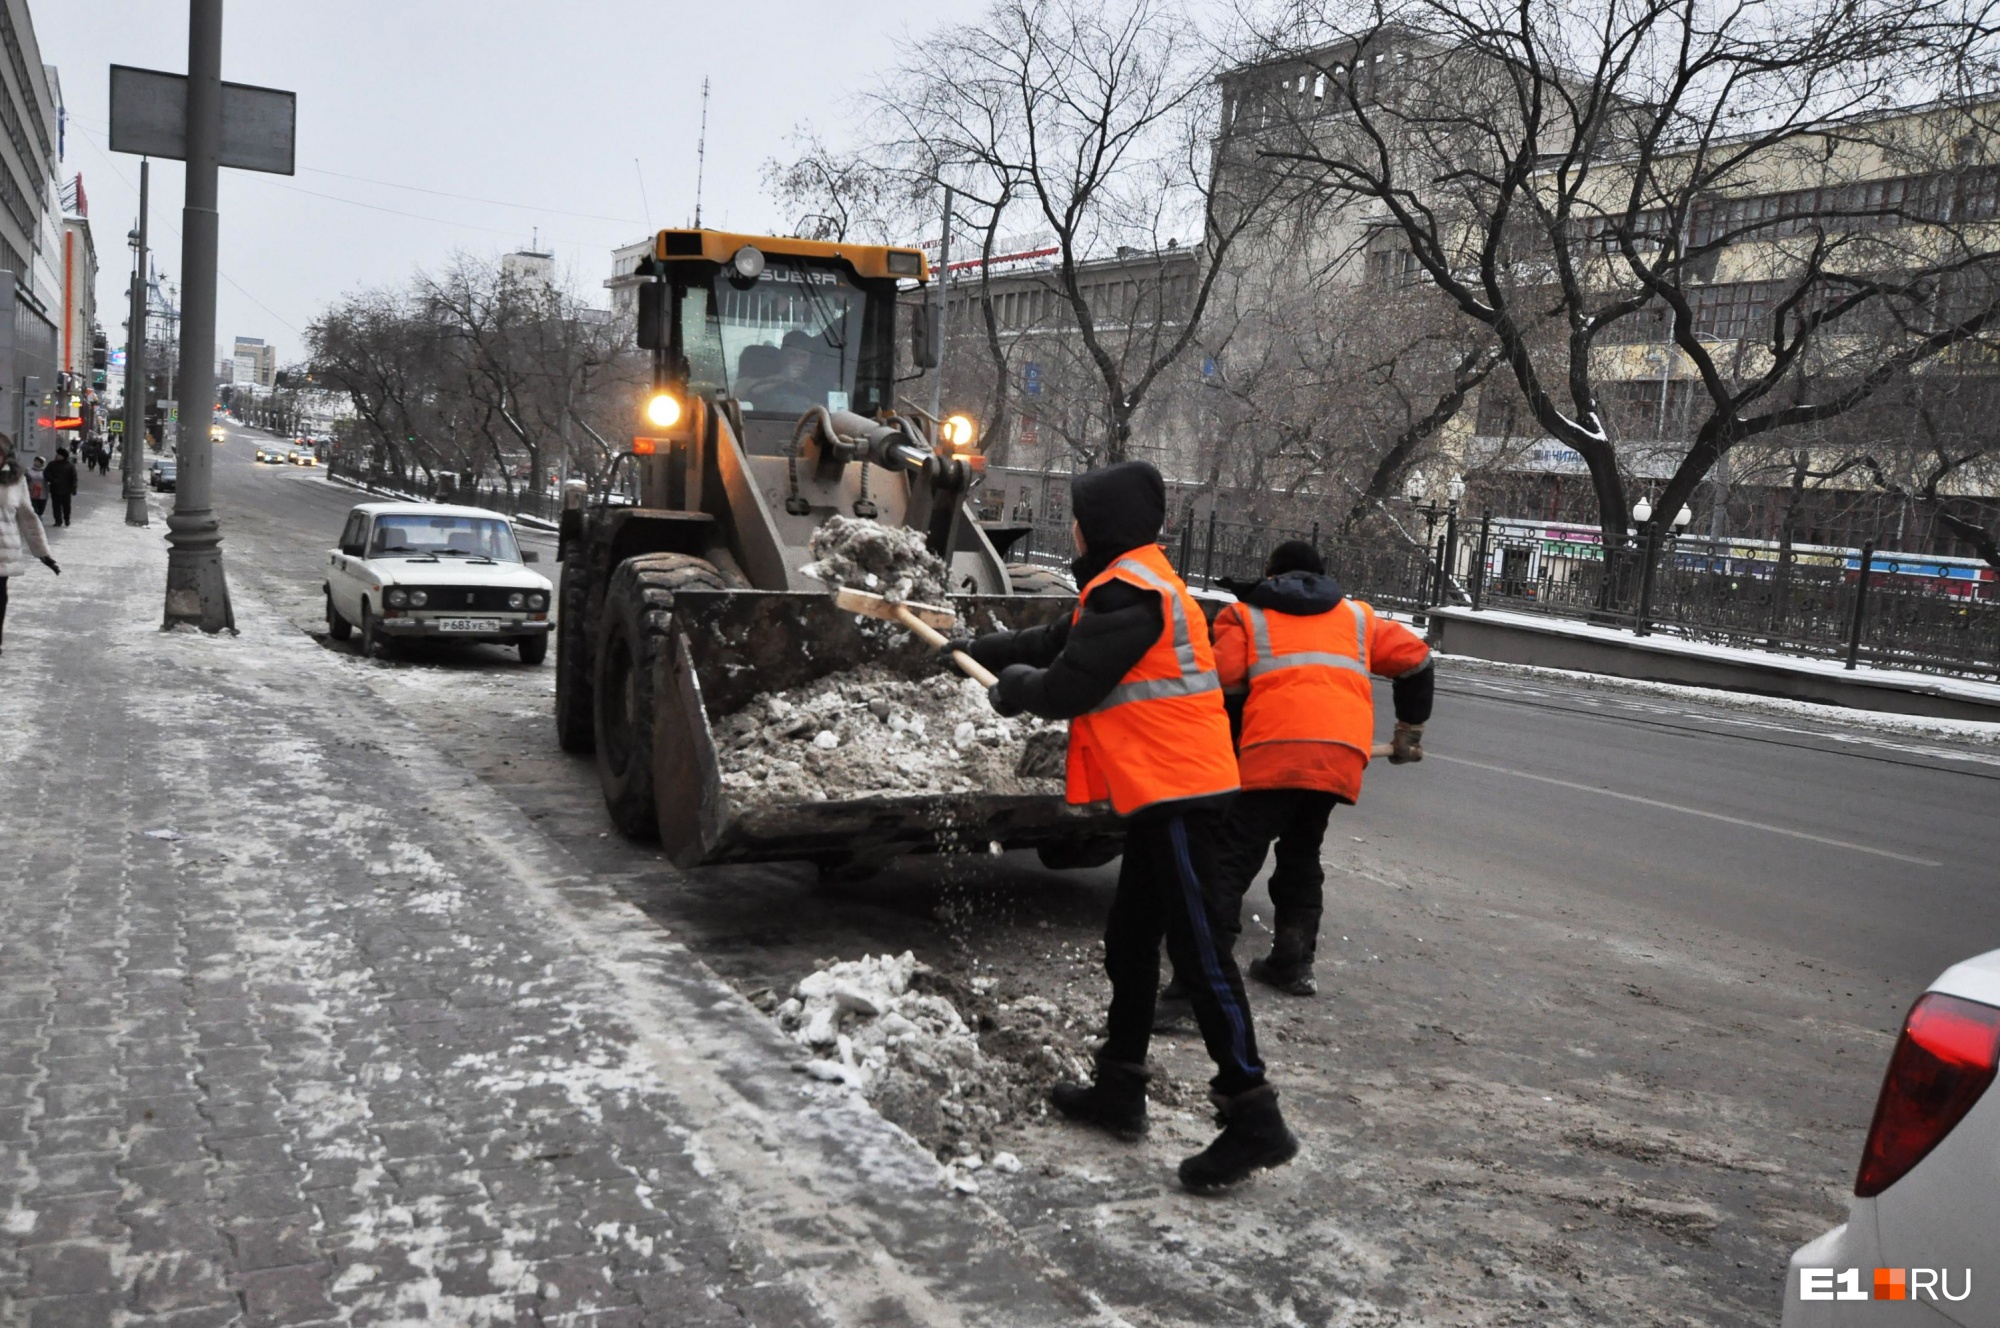 Прокуратура предупредила мэрию Екатеринбурга, чтобы она хорошо убирала снег на дорогах